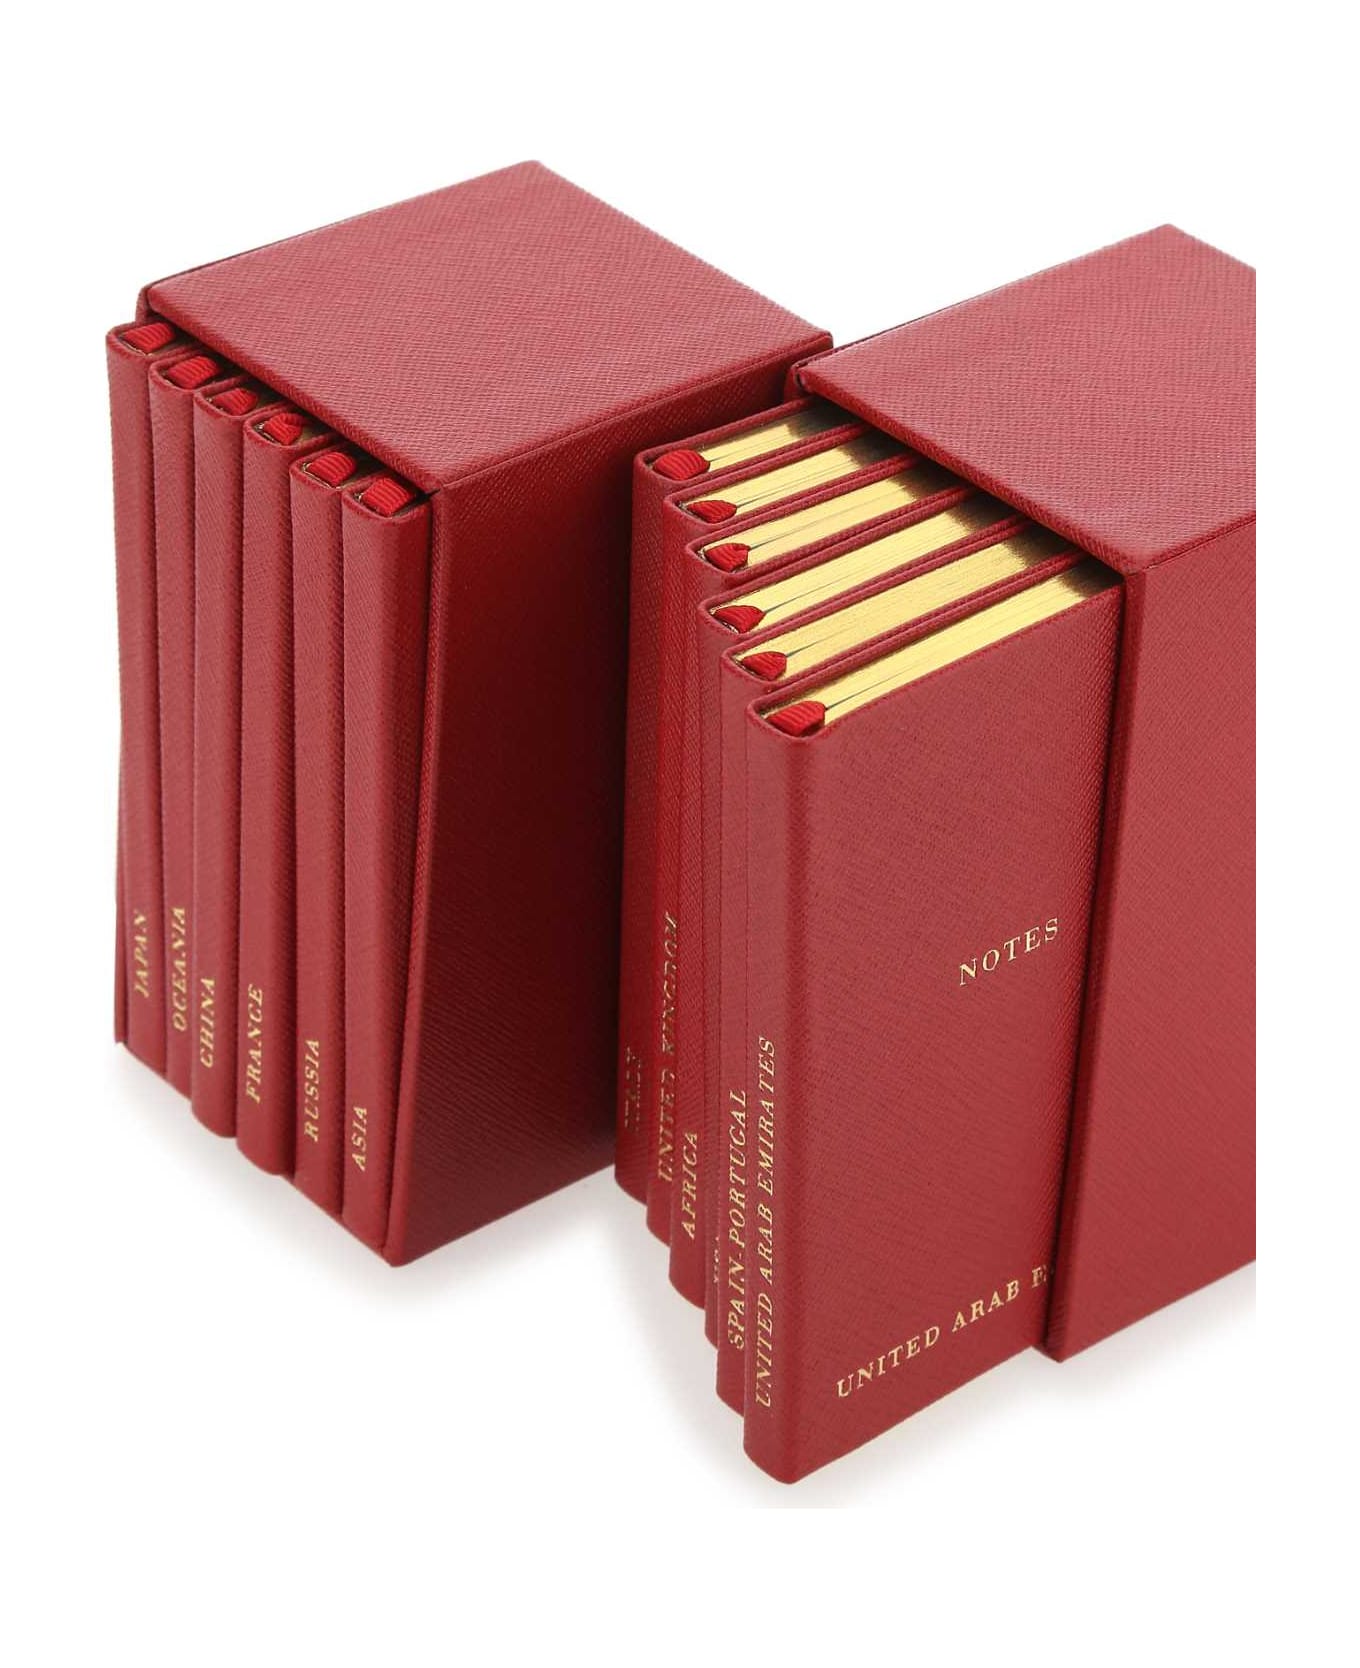 Prada Red Leather Notebook Set - F068Z インテリア雑貨